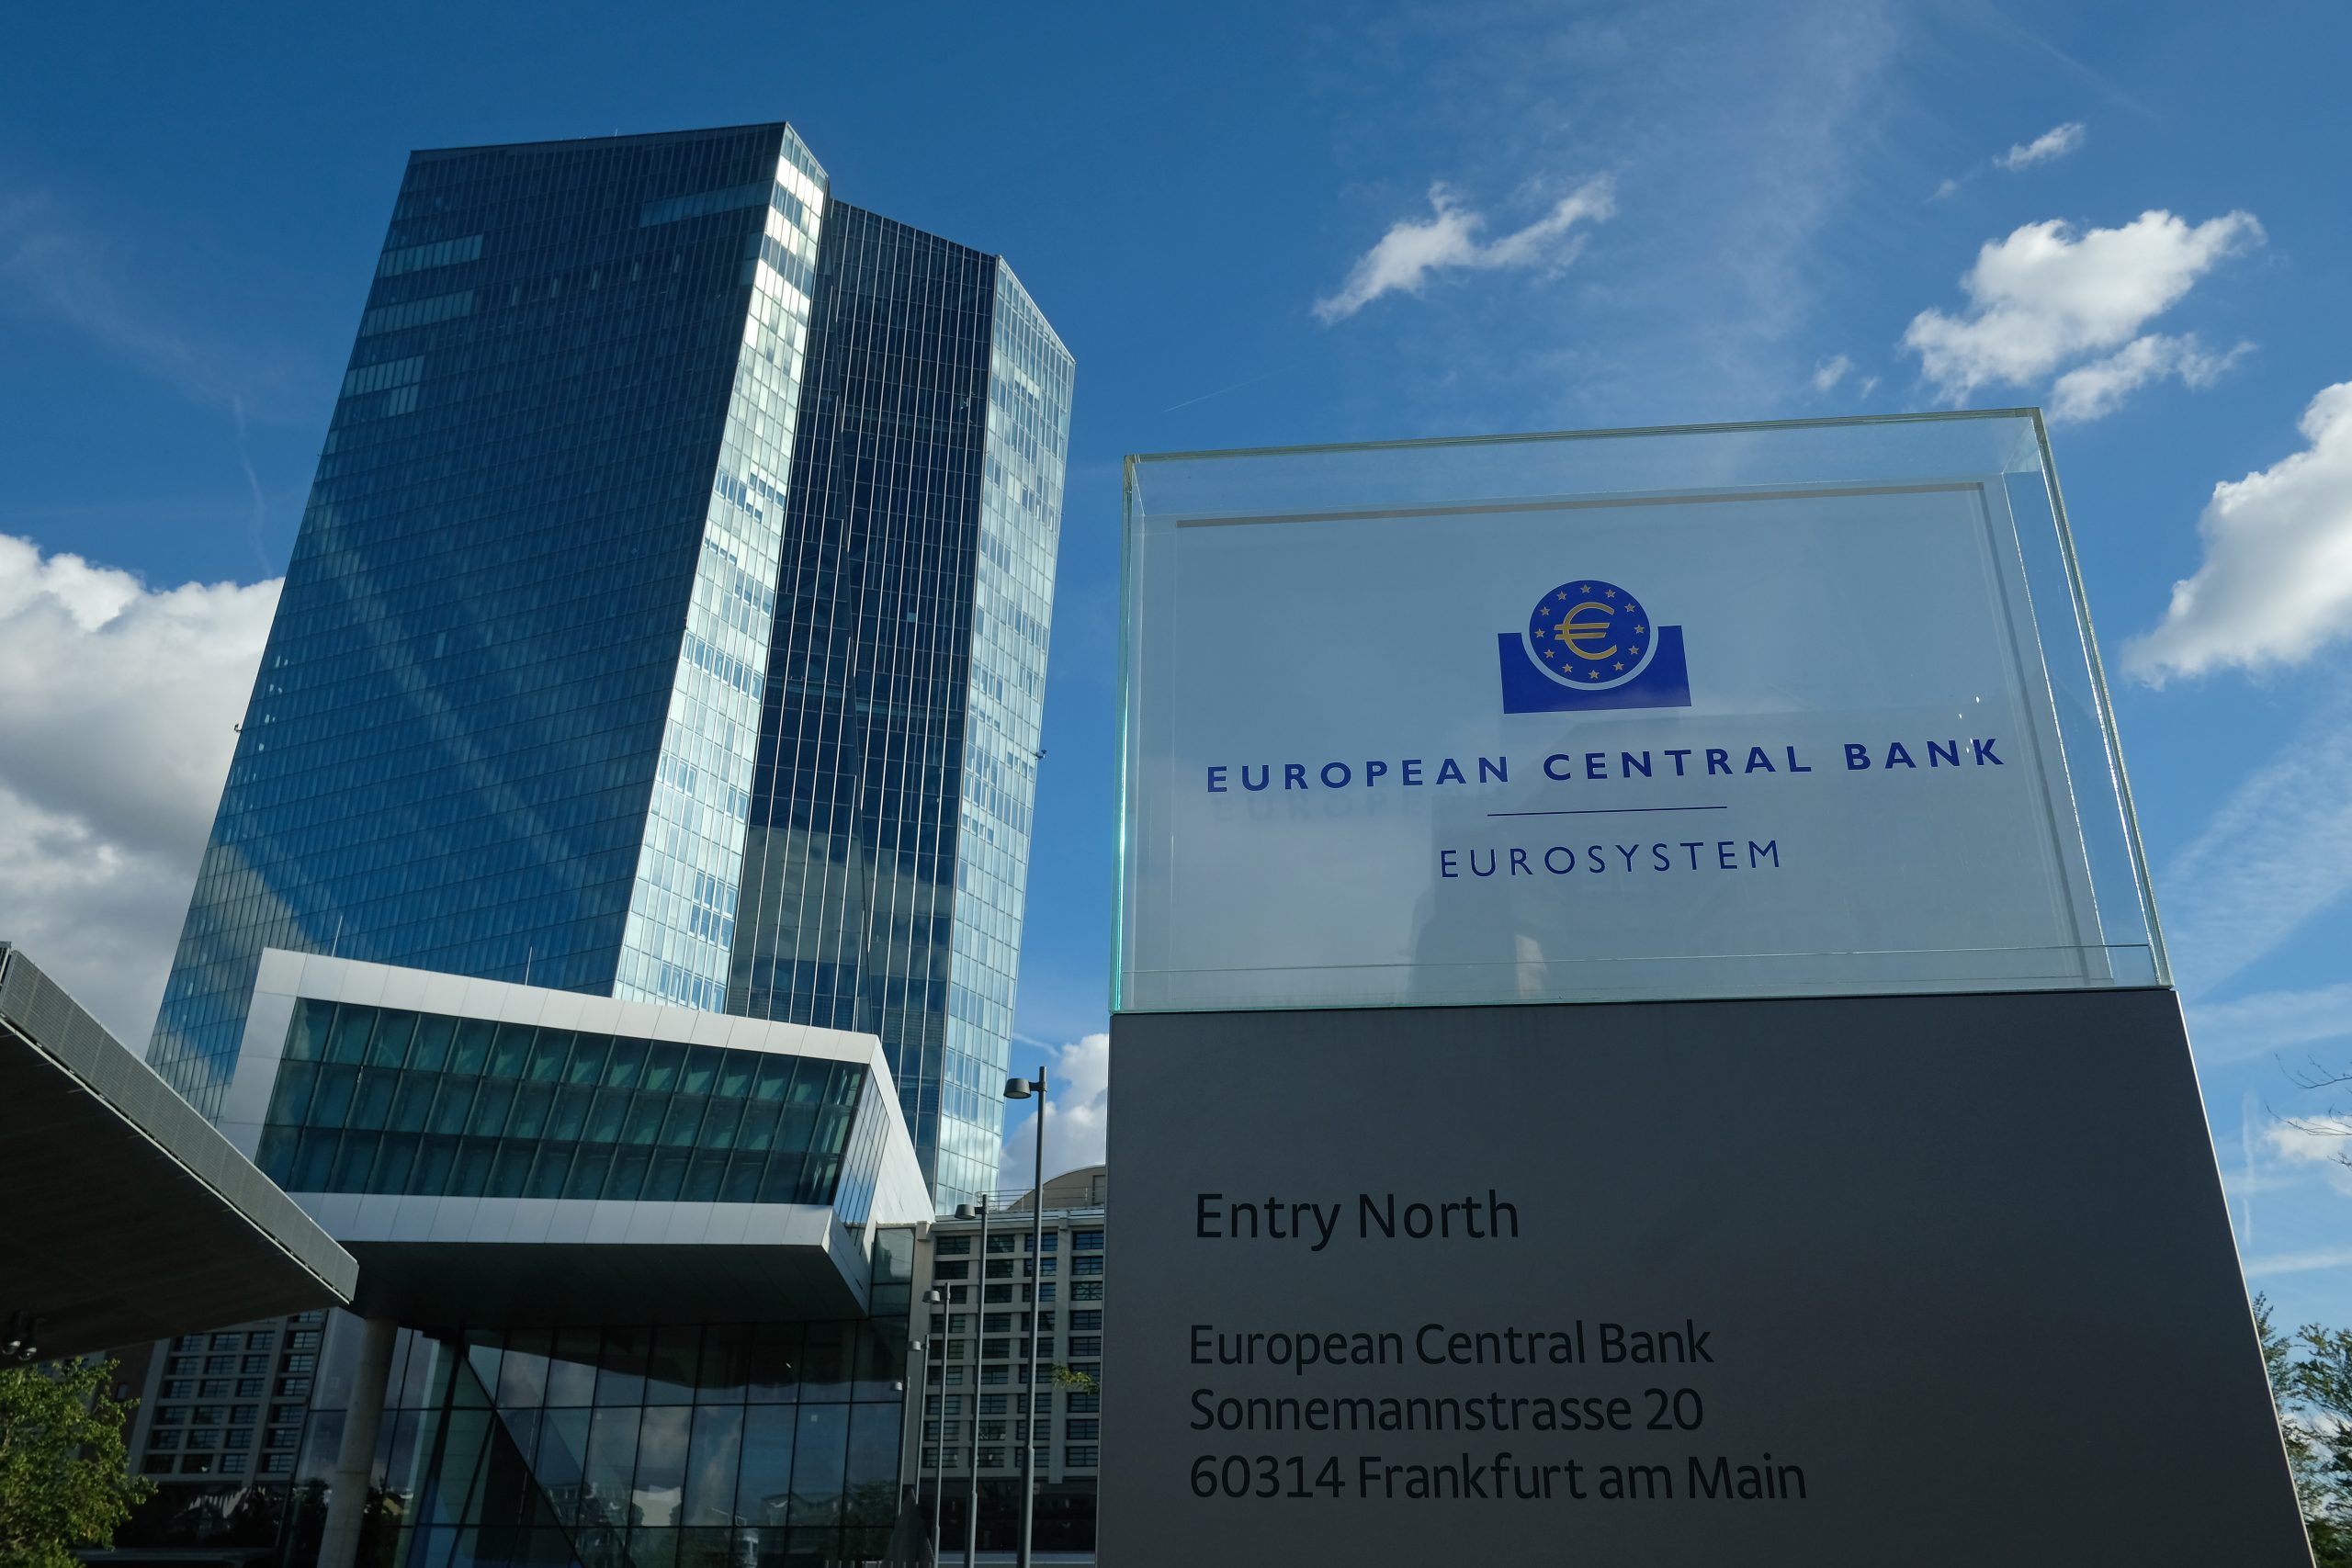 La Bce lancia un monito alle banche: “Niente dividendi fino a gennaio 2021”